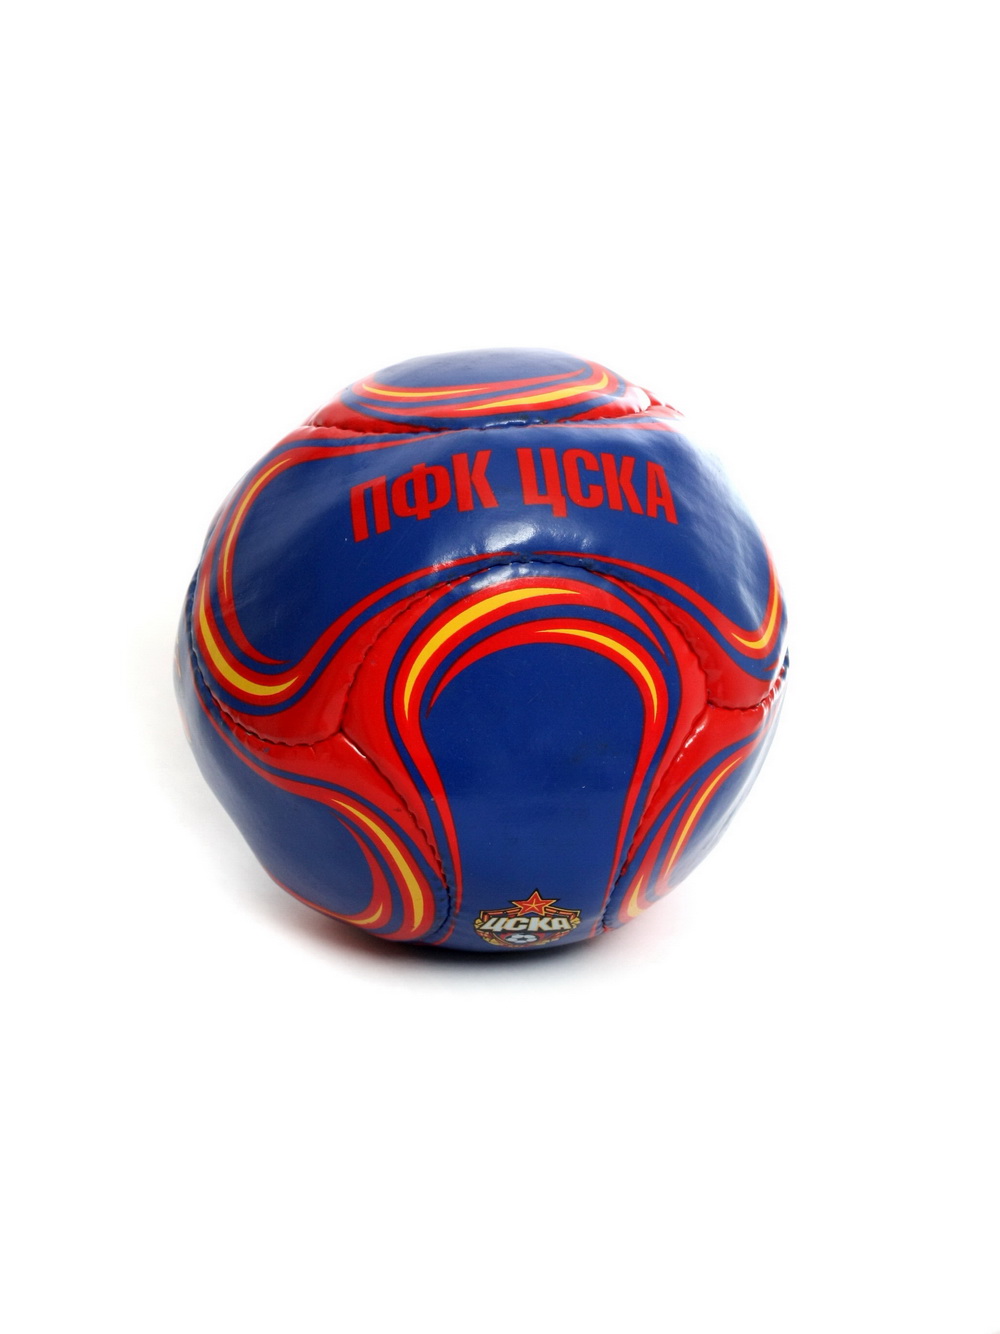 Мяч сувенирный красно-синий "Эмблема и талисман", размер 2